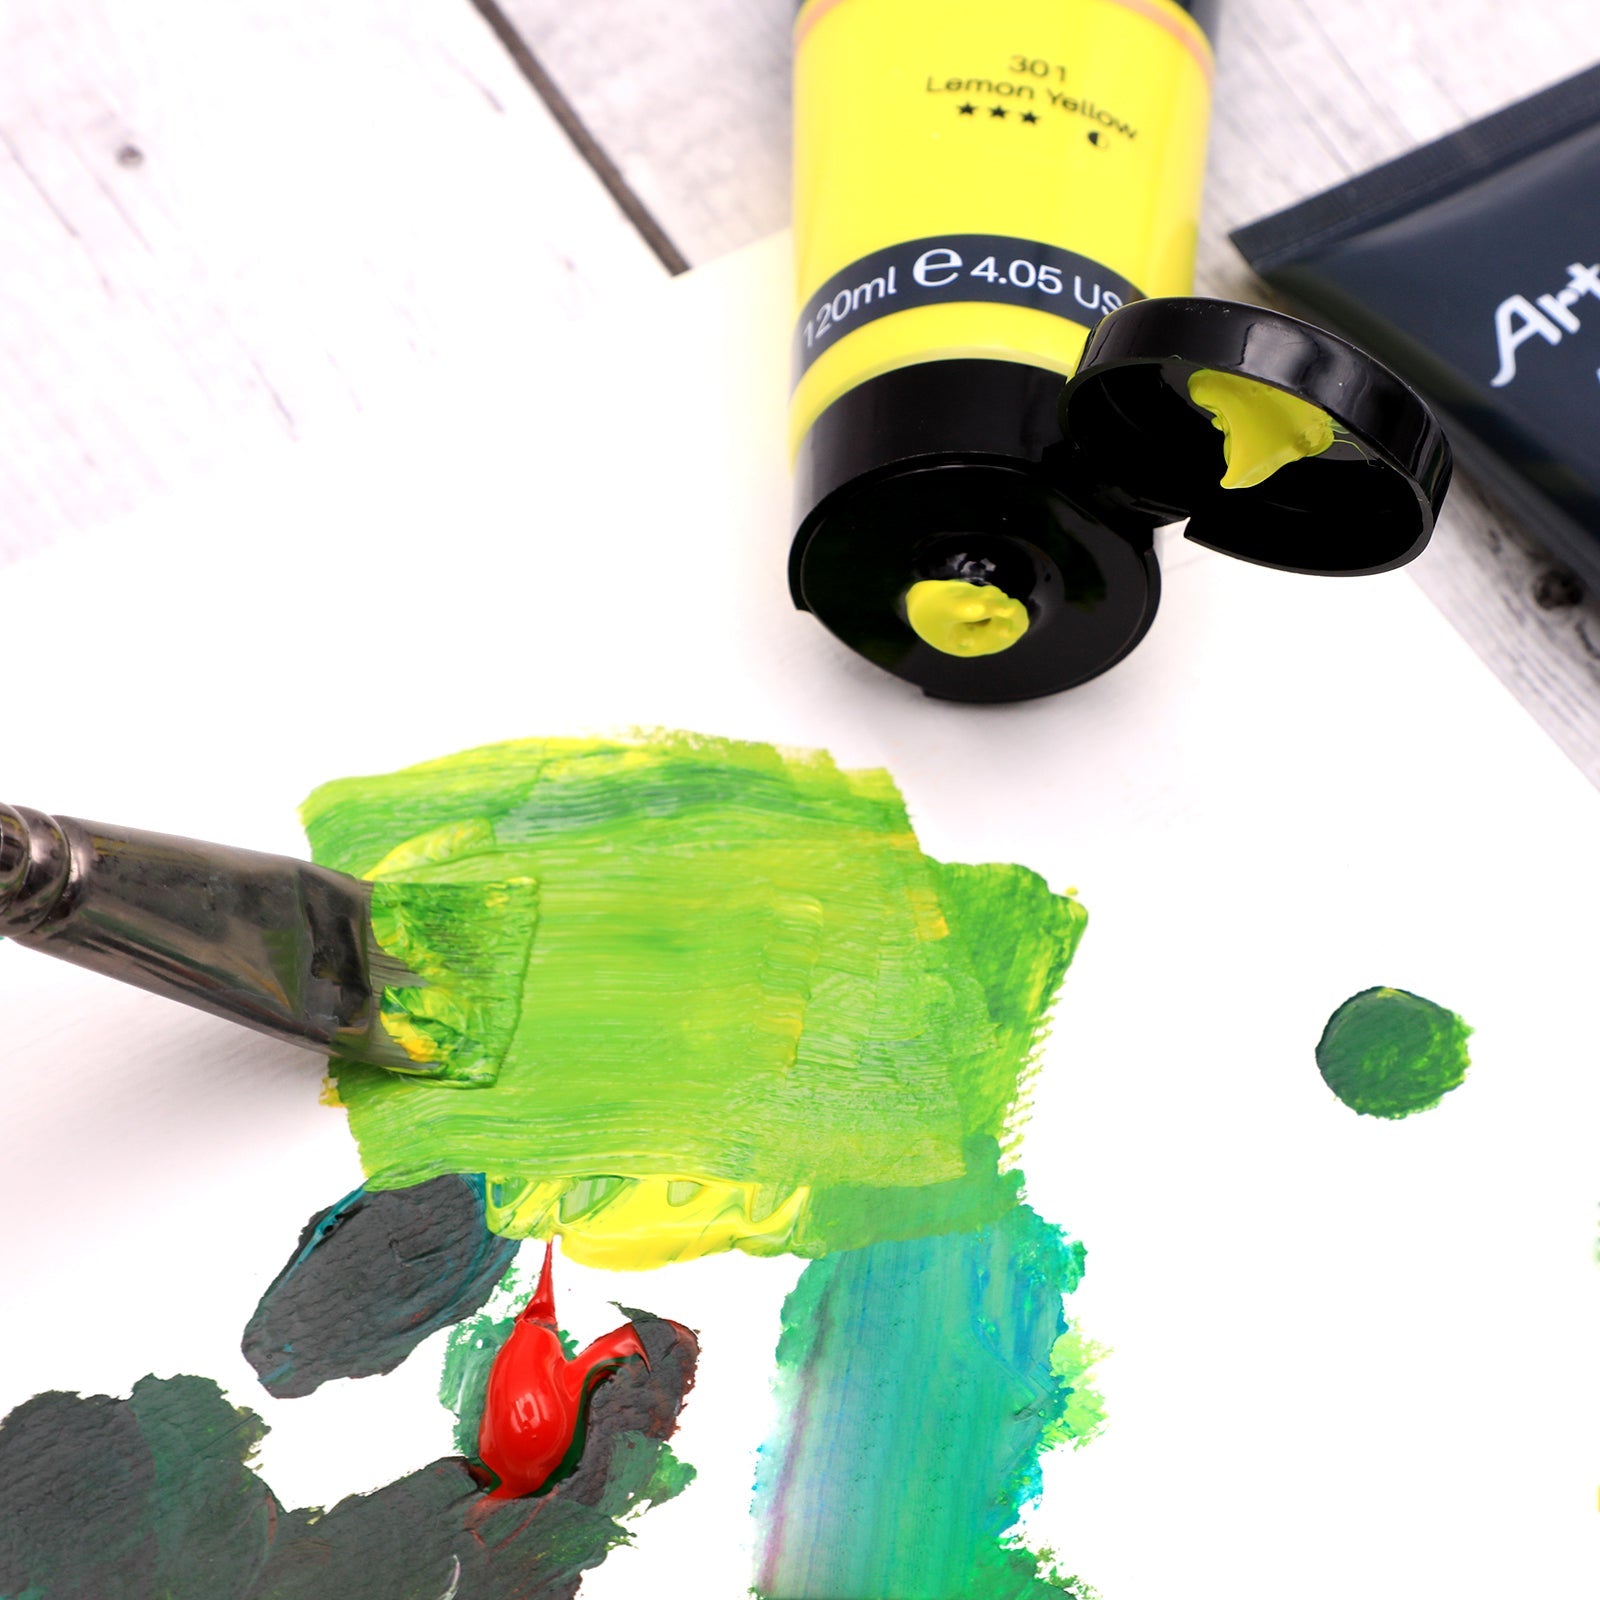 Artecho Acrylic Paint Set 20 Colours 4.05 oz/ 120ml Tube Art Paint - Lifespace